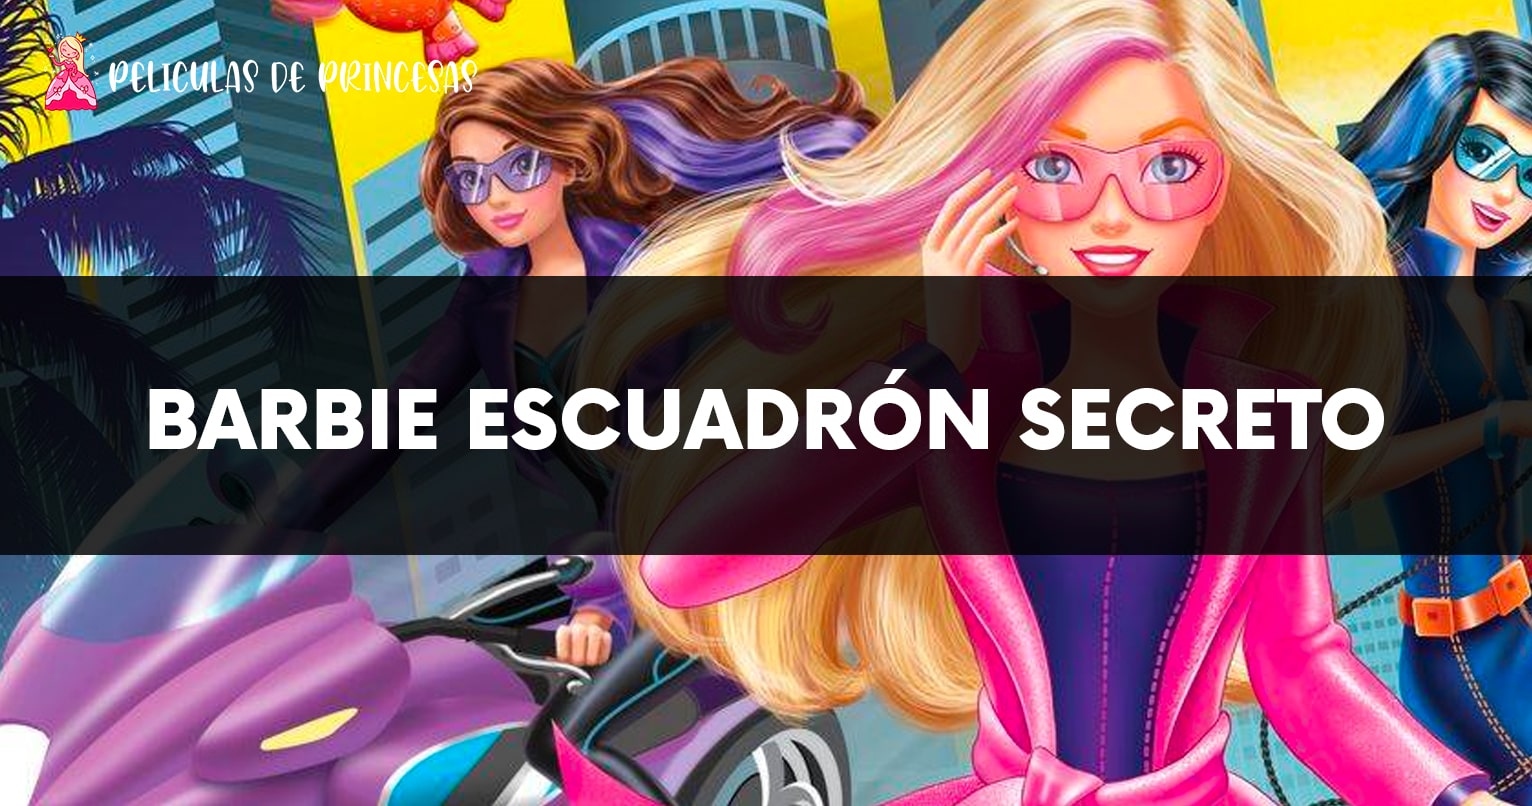 Barbie escuadrón secreto – Película completa Gratis Online